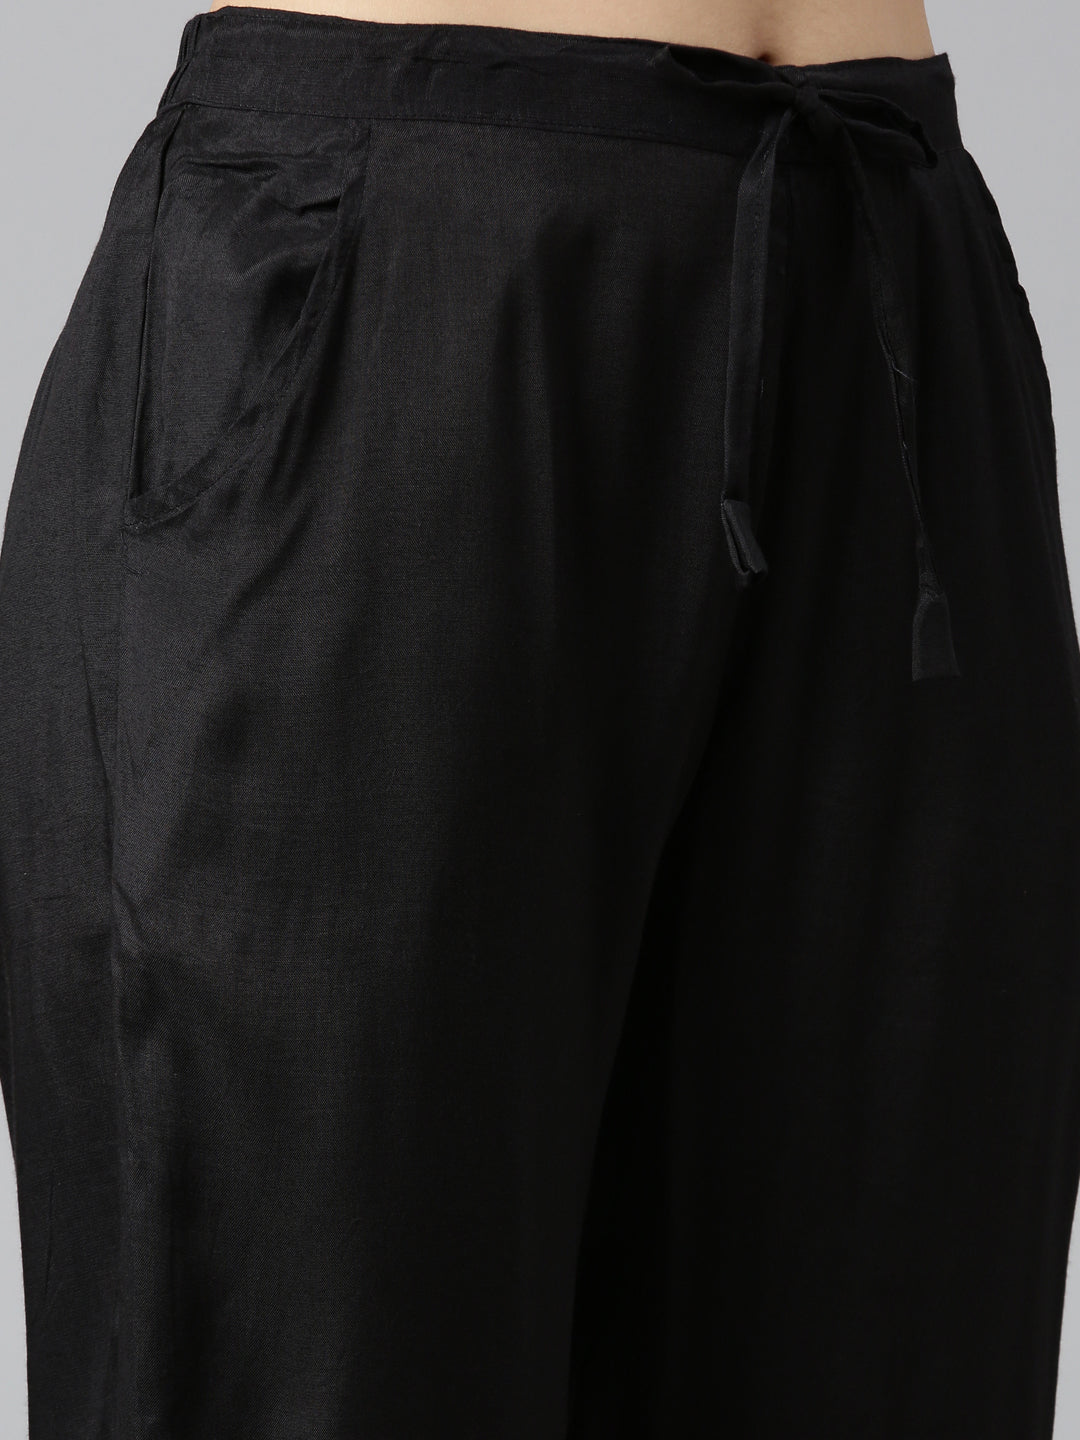 Neeru's Black Regular Straight Printed Kurta And Trousers